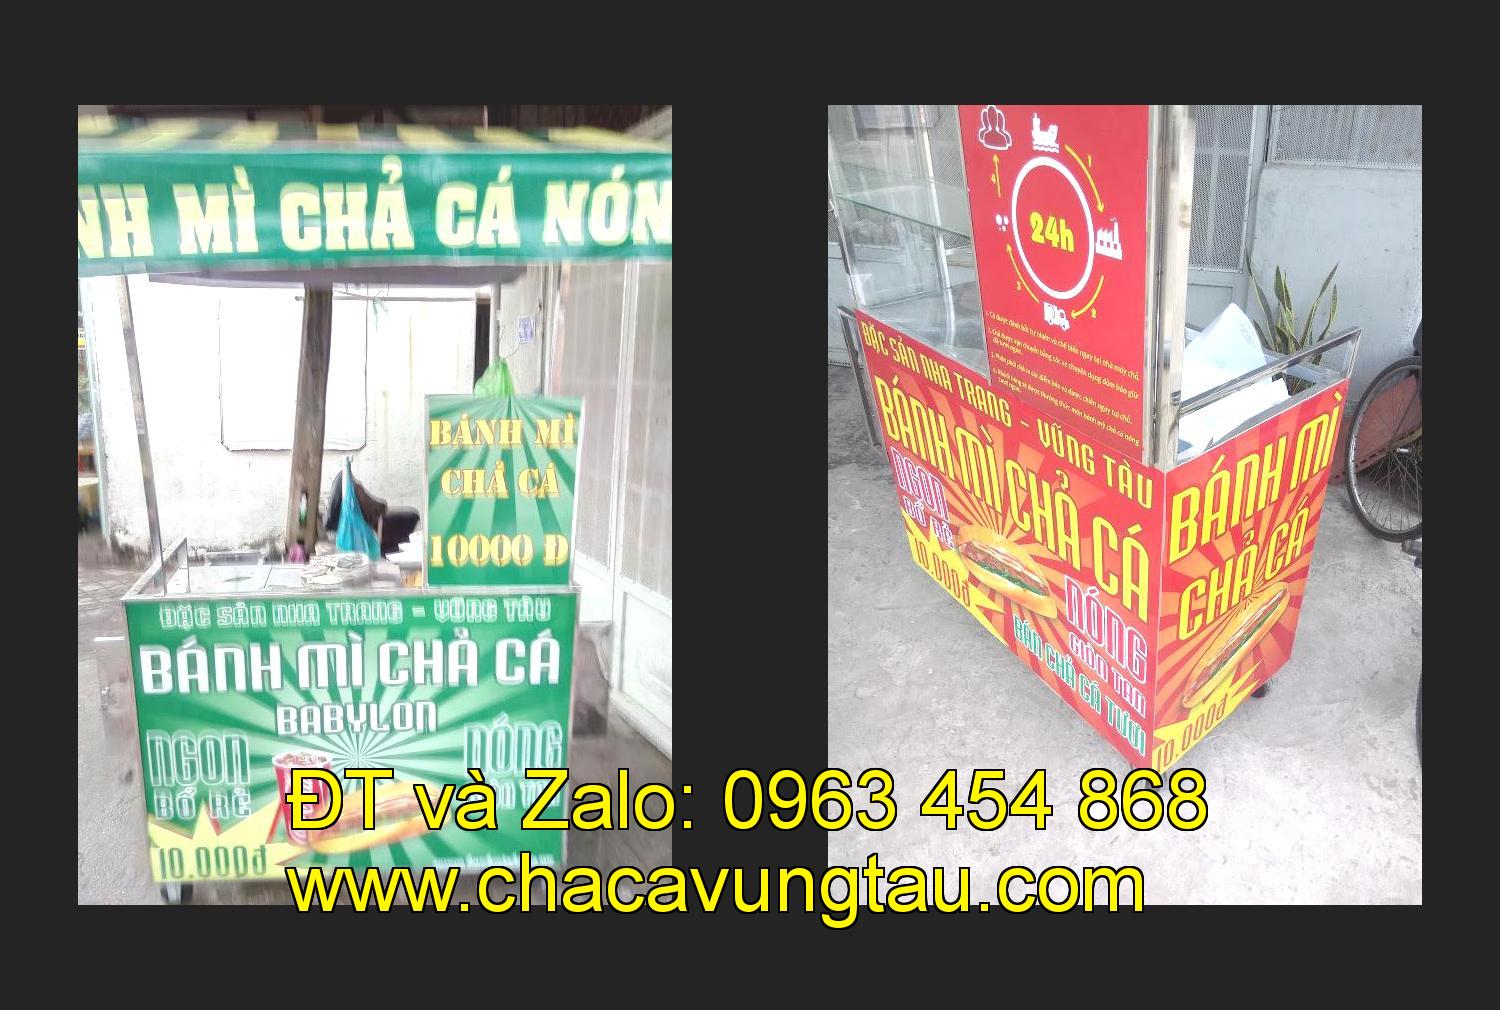 Bán xe bánh mì chả cá tại tỉnh Thanh Hóa